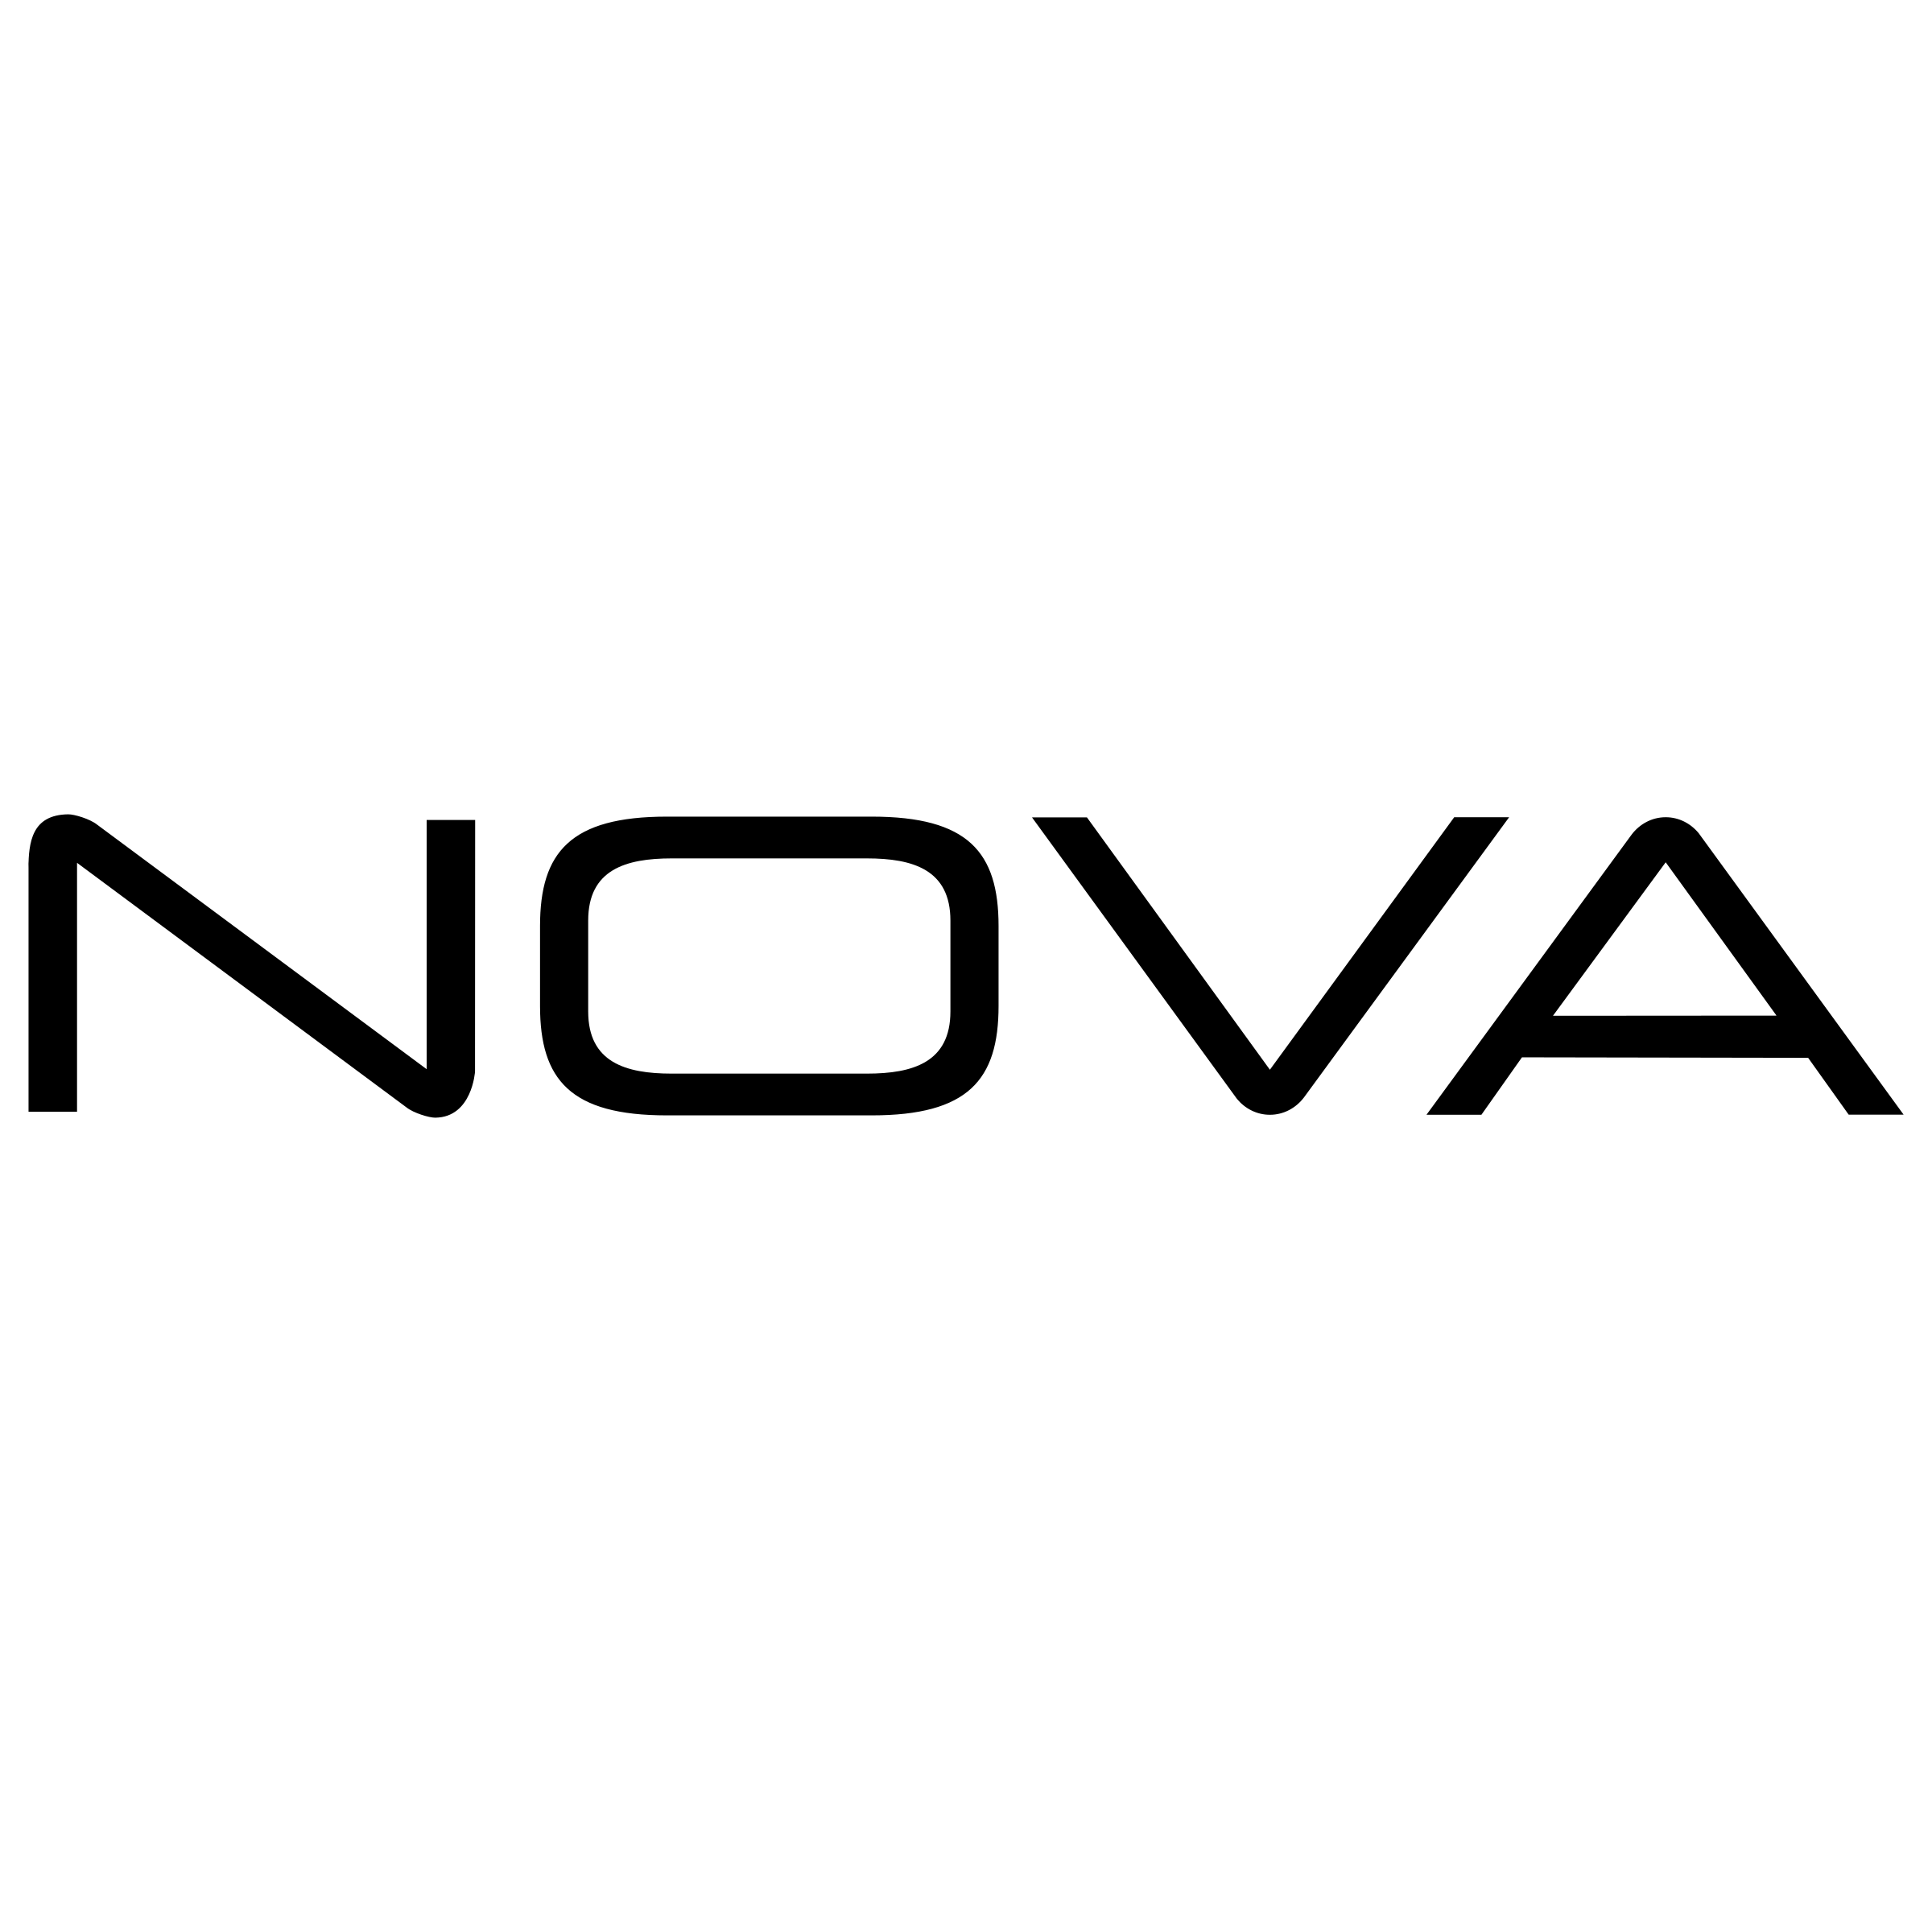 Nova Logo - Nova Logo PNG Transparent & SVG Vector